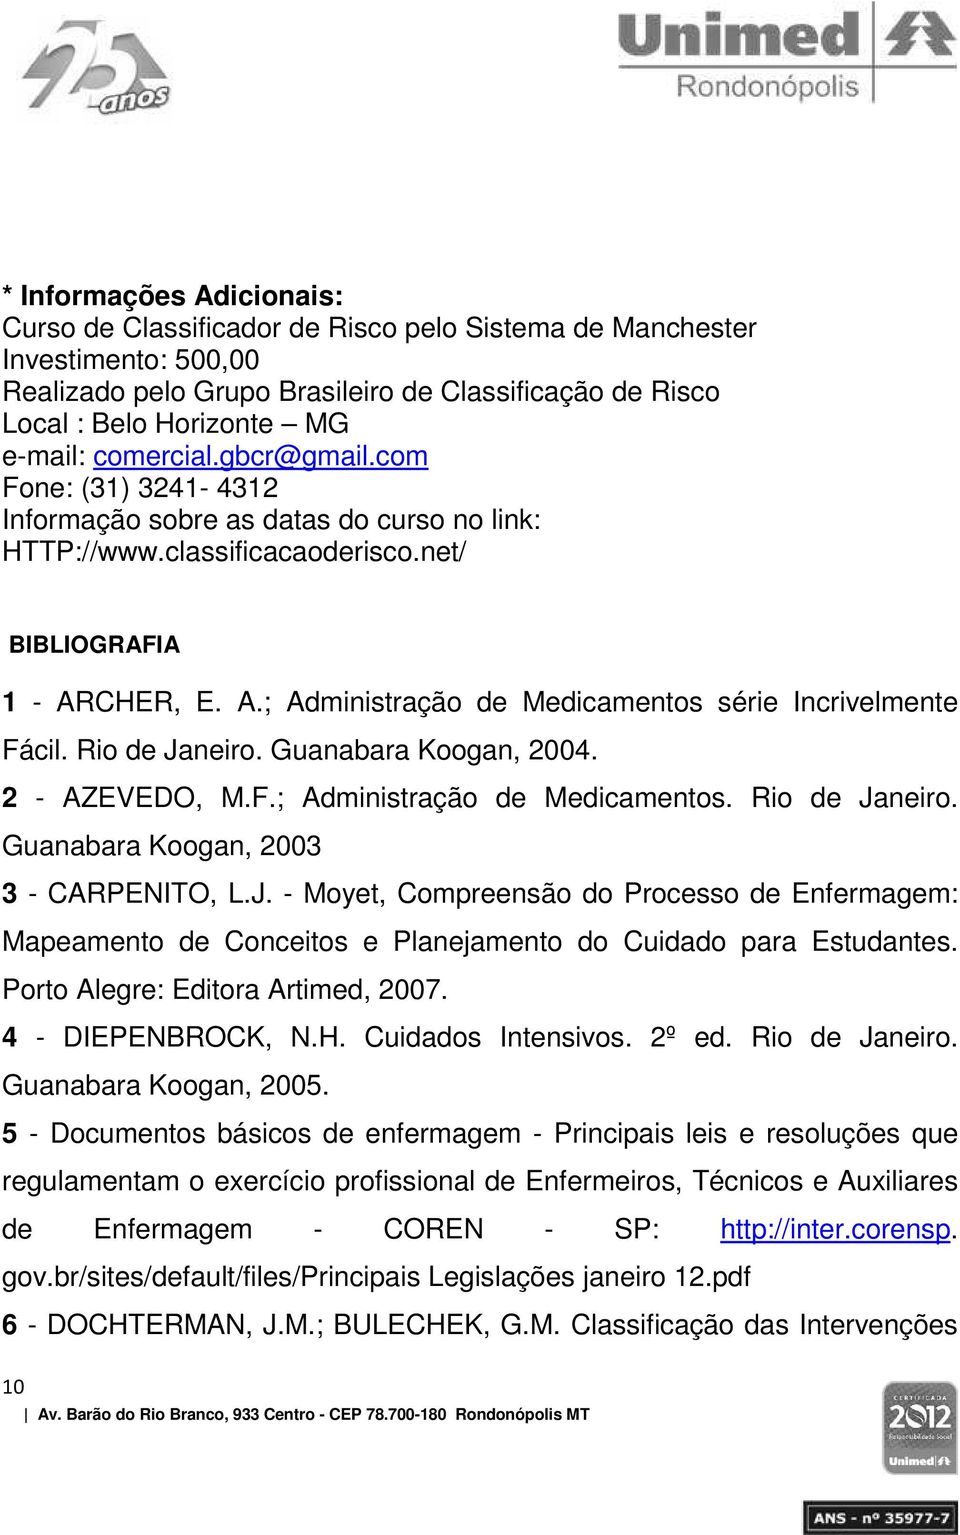 CHER, E. A.; Administração de Medicamentos série Incrivelmente Fácil. Rio de Janeiro. Guanabara Koogan, 2004. 2 - AZEVEDO, M.F.; Administração de Medicamentos. Rio de Janeiro. Guanabara Koogan, 2003 3 - CARPENITO, L.